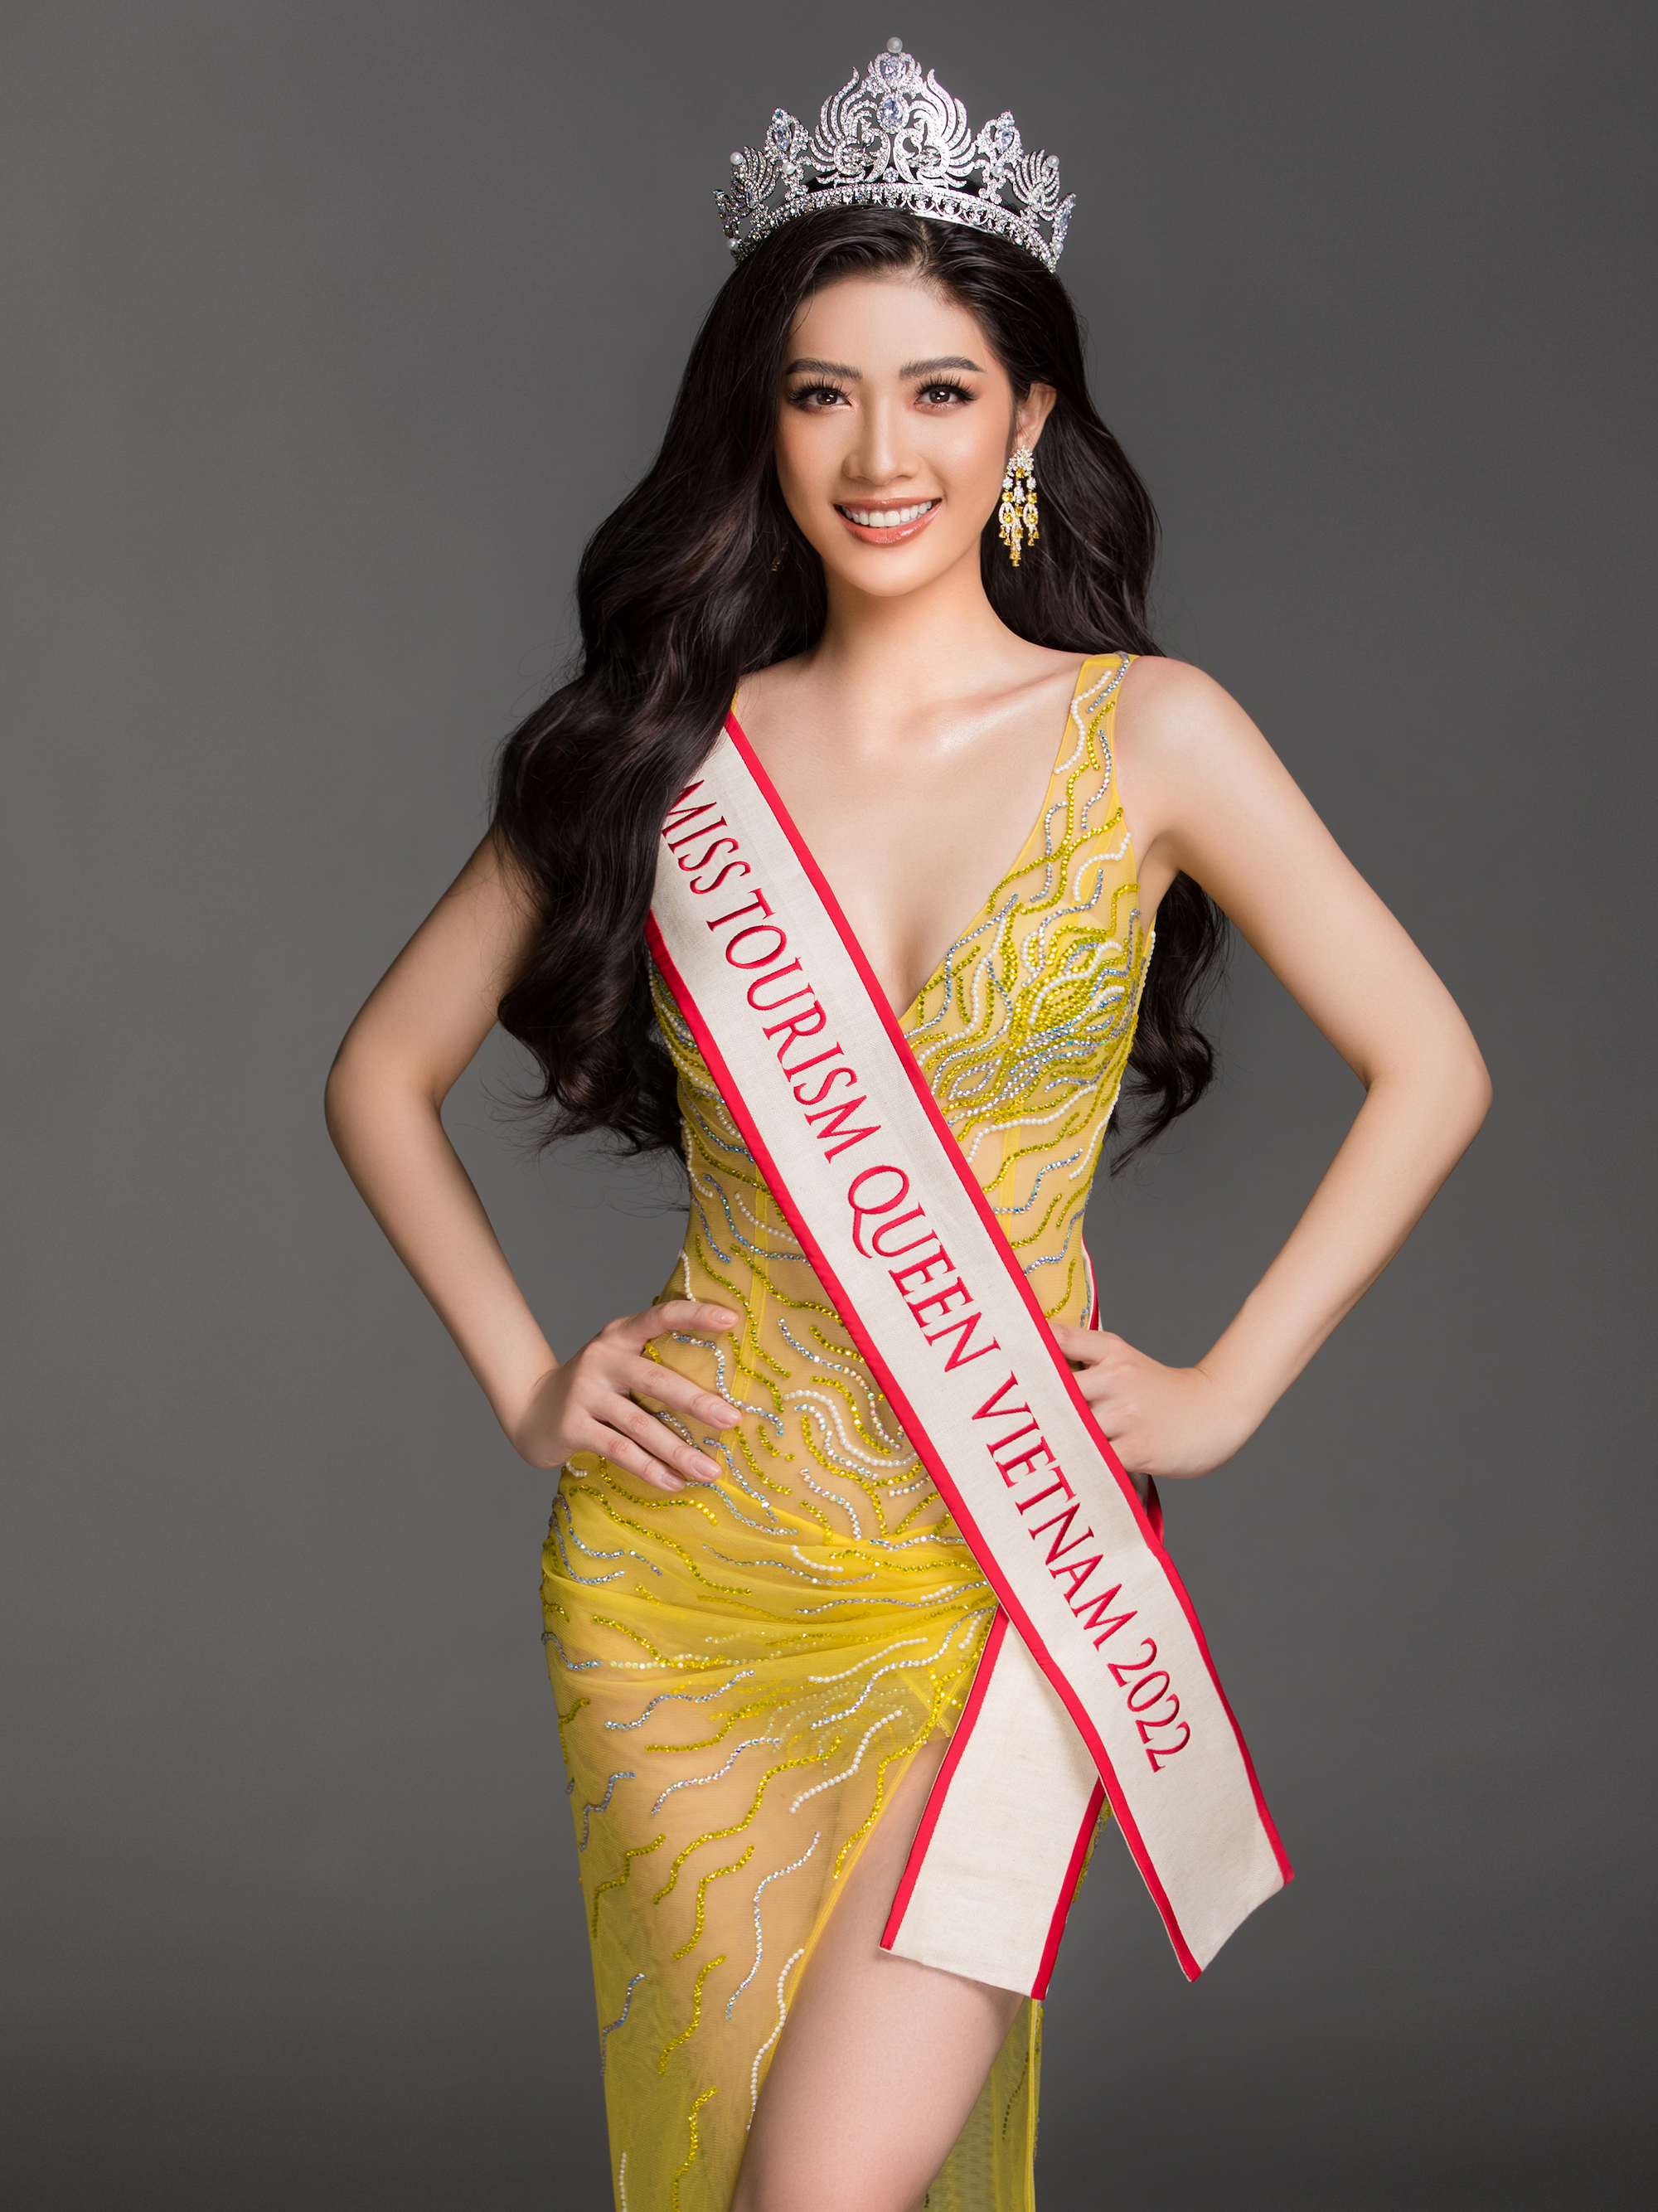 Nhan sắc người đẹp Kiên Giang thi Hoa hậu Du lịch Thế giới - Ảnh 3.